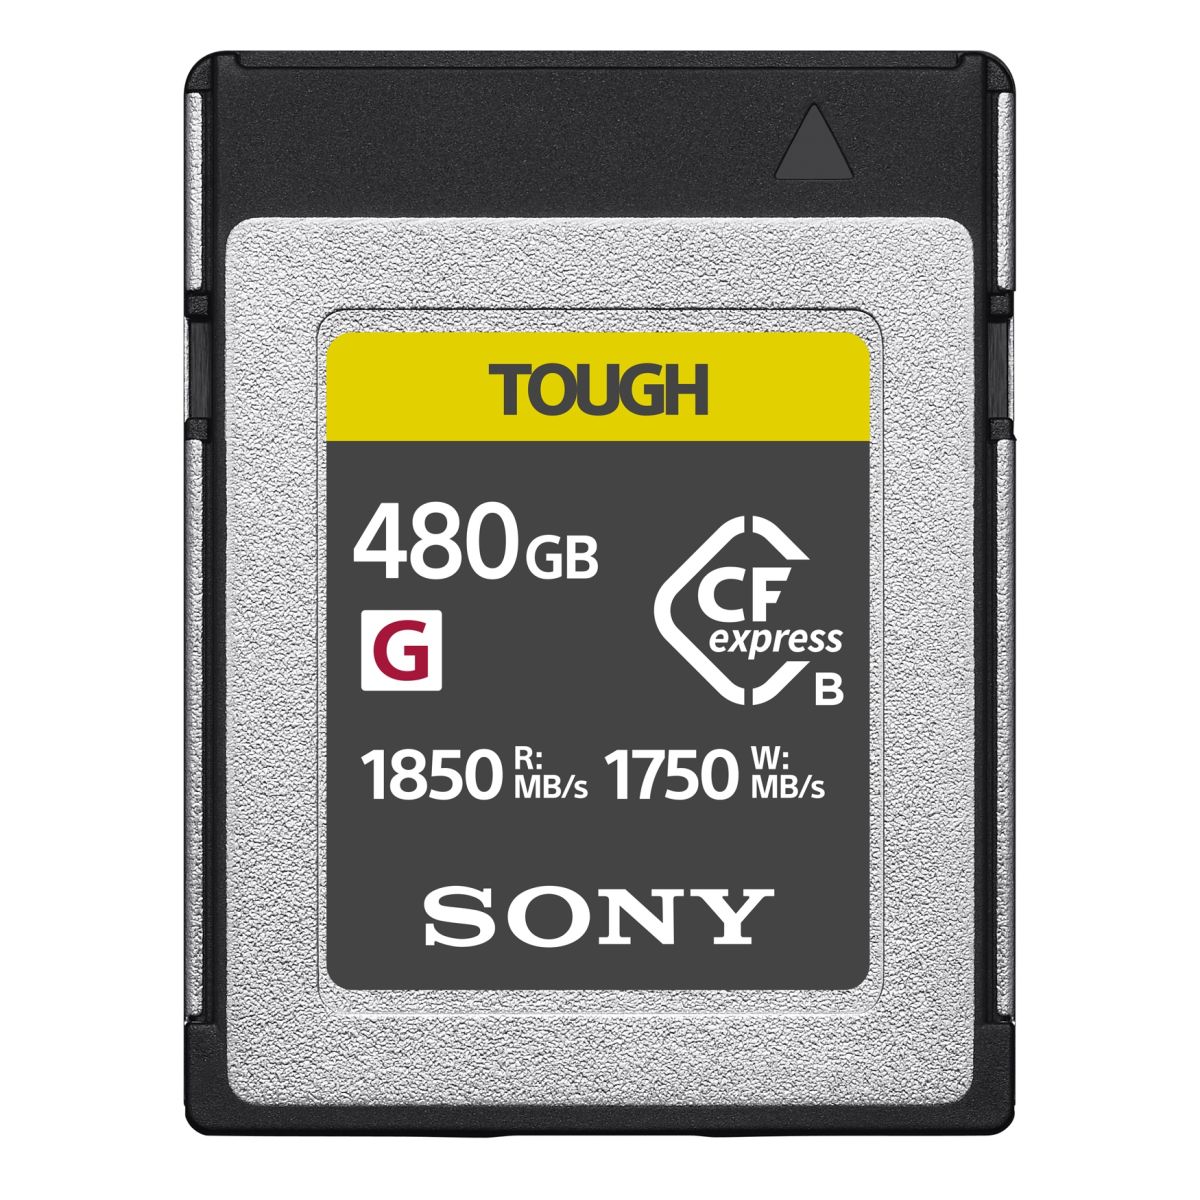 Sony 480GB CFexpress Type B TOUGH